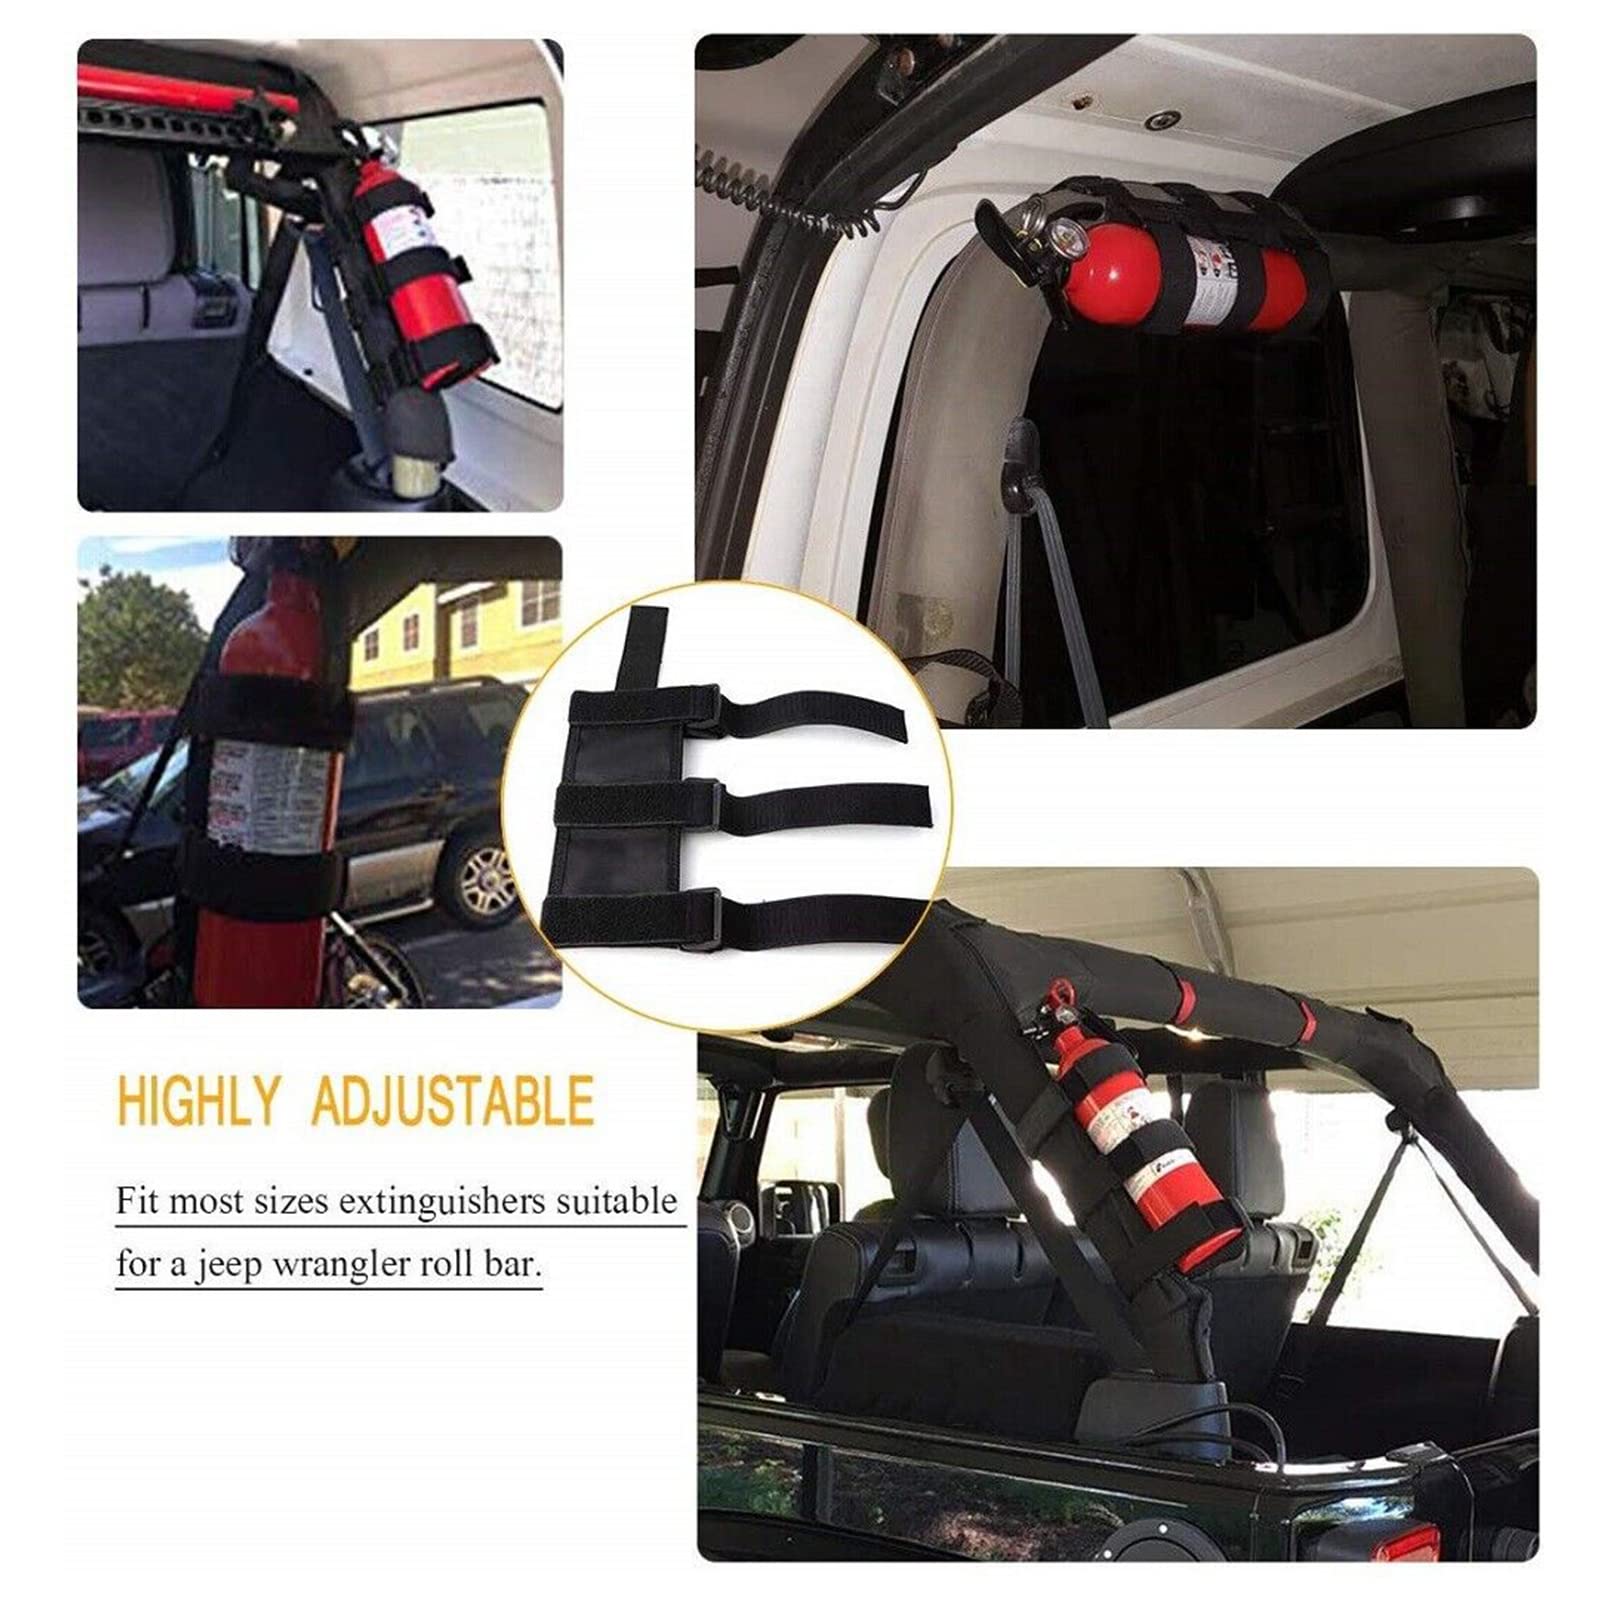 Adjustable Roll Bar Fire Extinguisher Mount Holder 3 lb for Jeep Wrangler Unlimited CJ YJ LJ TJ JK JKU JL JLU 4XE,(Black, Without Pattern)